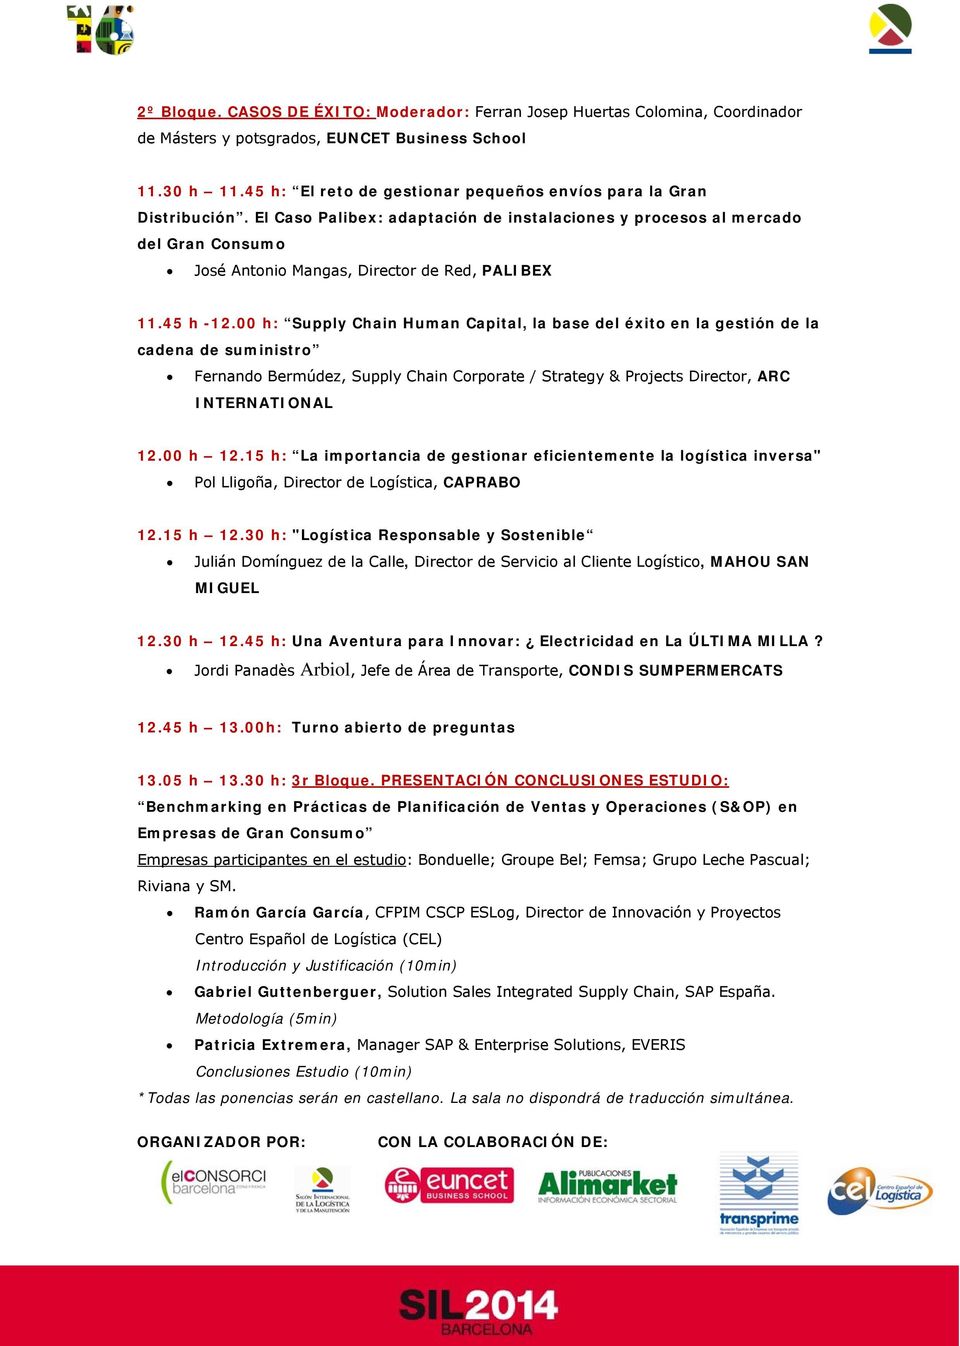 El Caso Palibex: adaptación de instalaciones y procesos al mercado del Gran Consumo José Antonio Mangas, Director de Red, PALIBEX 11.45 h -12.